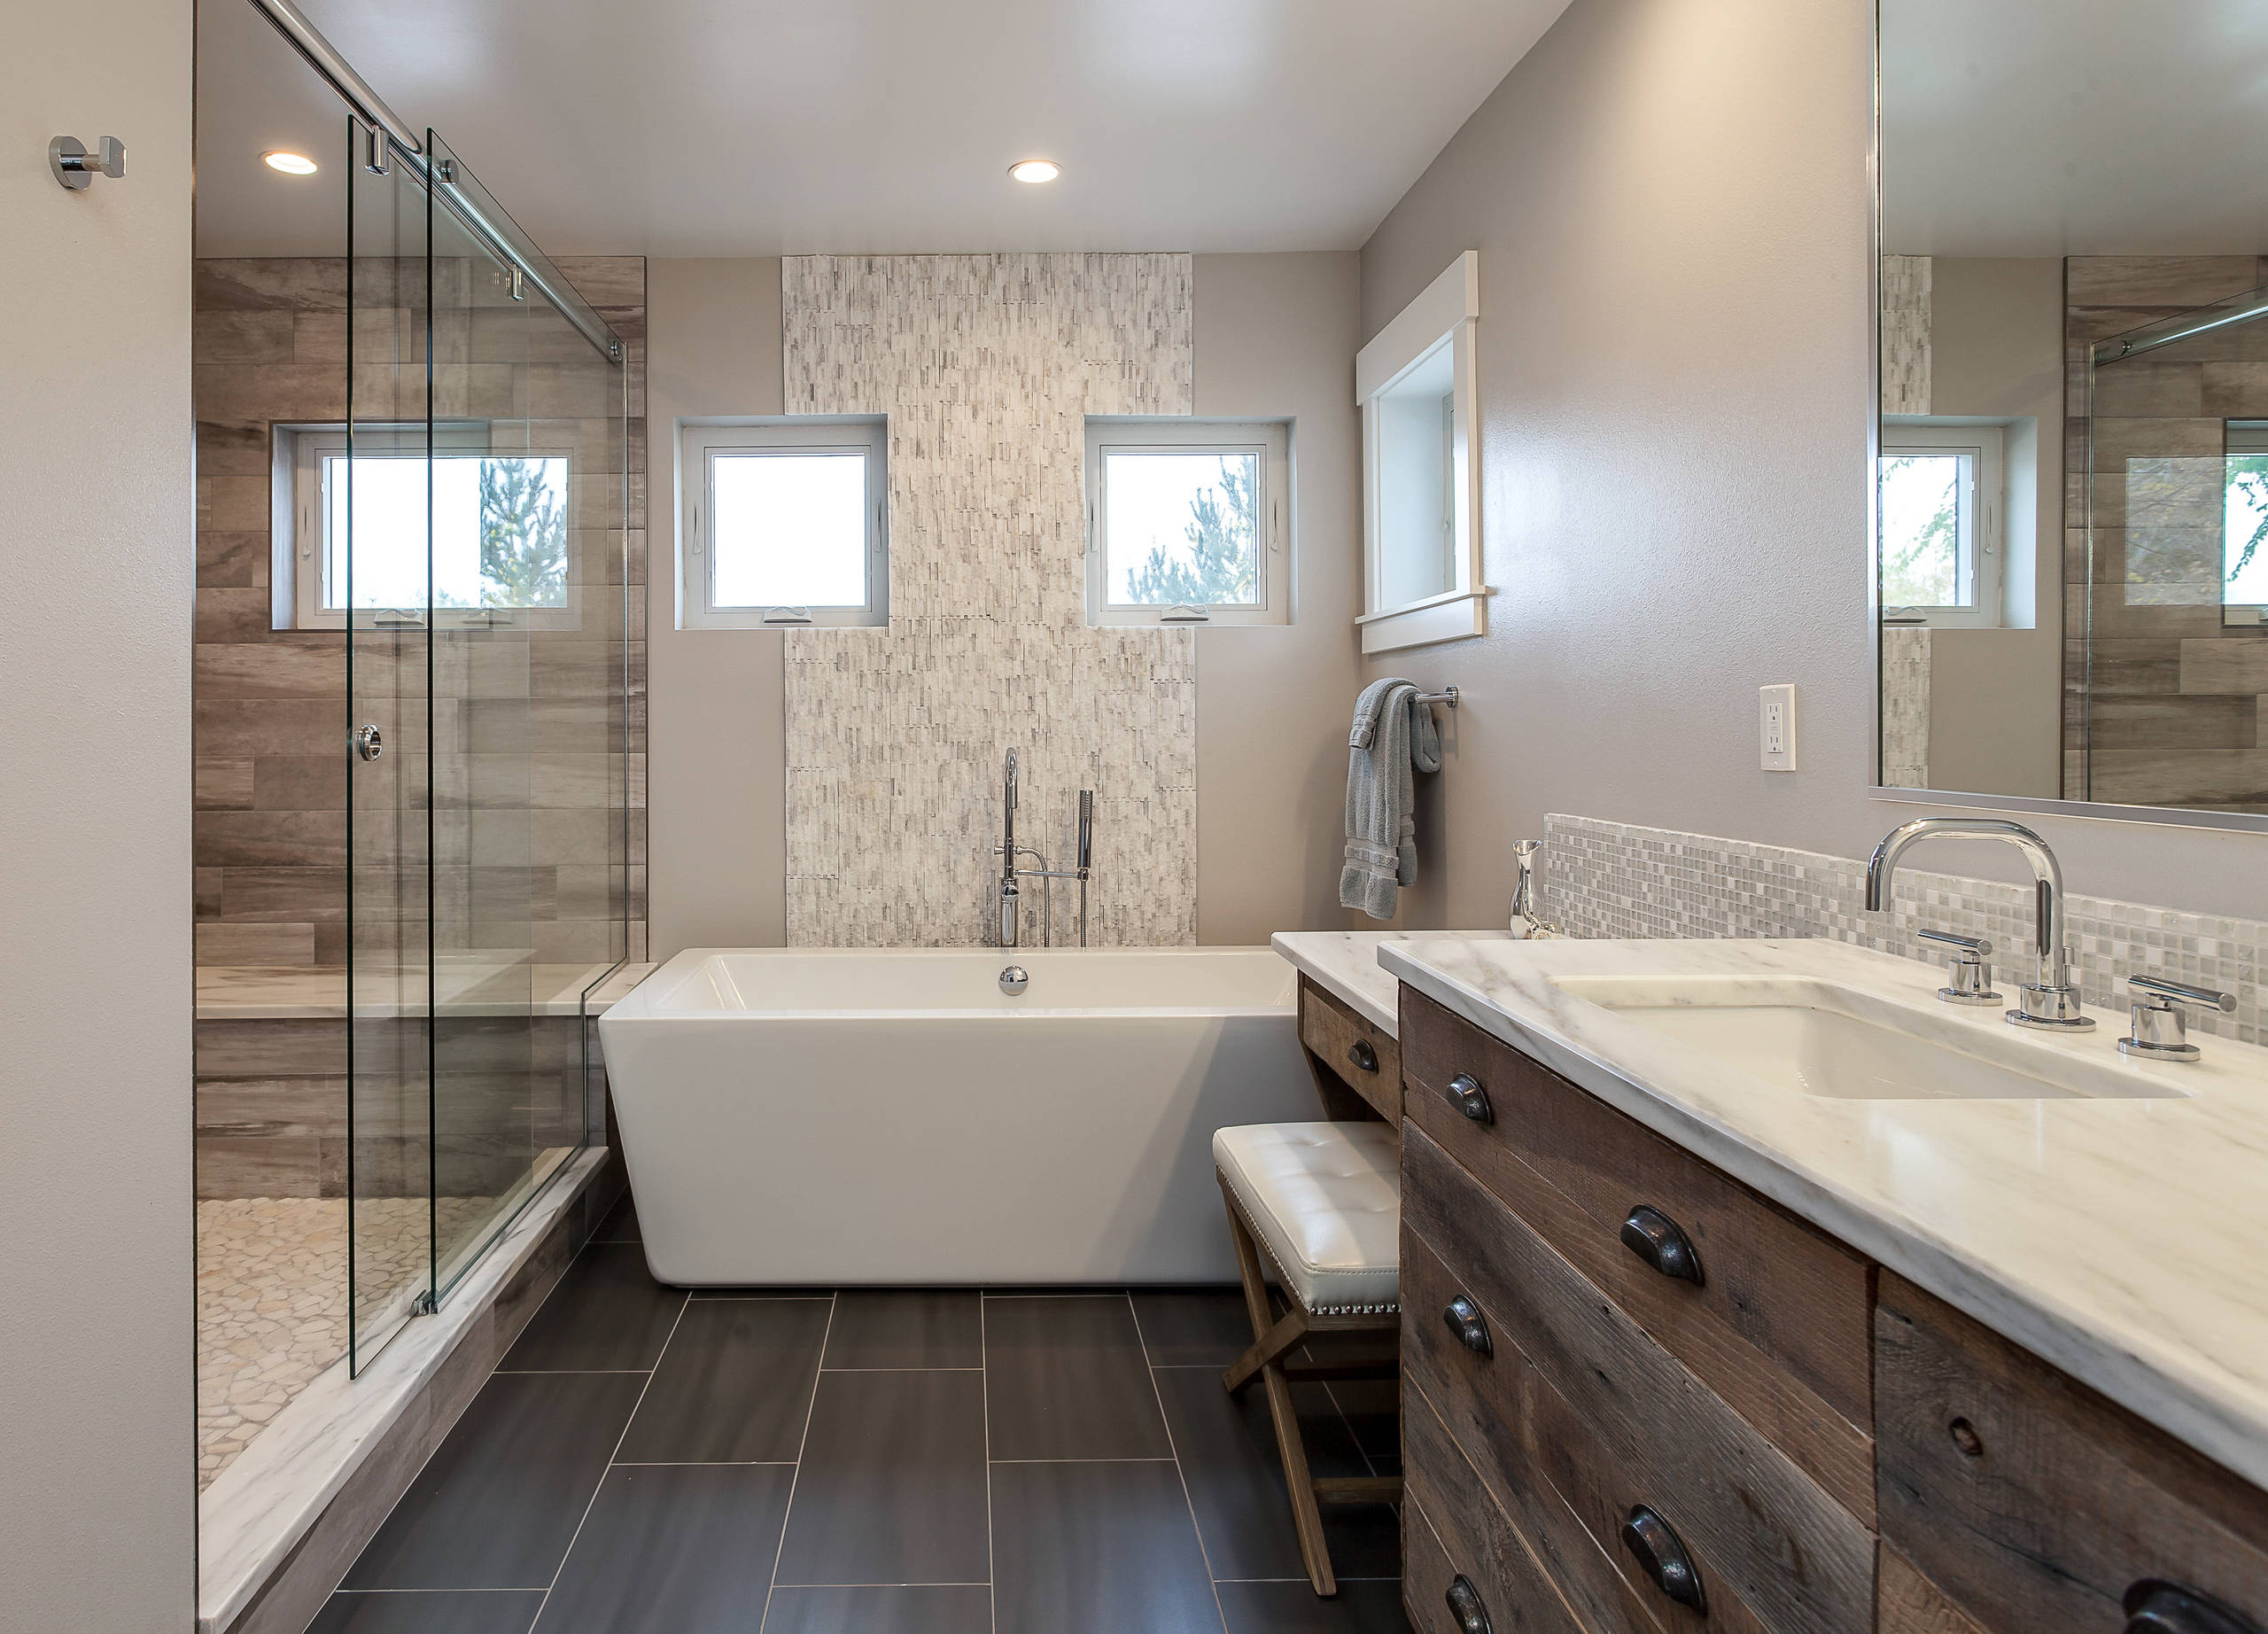 Rustic Bathroom Design Ideas, Rustic Contemporary Bathroom Vanity